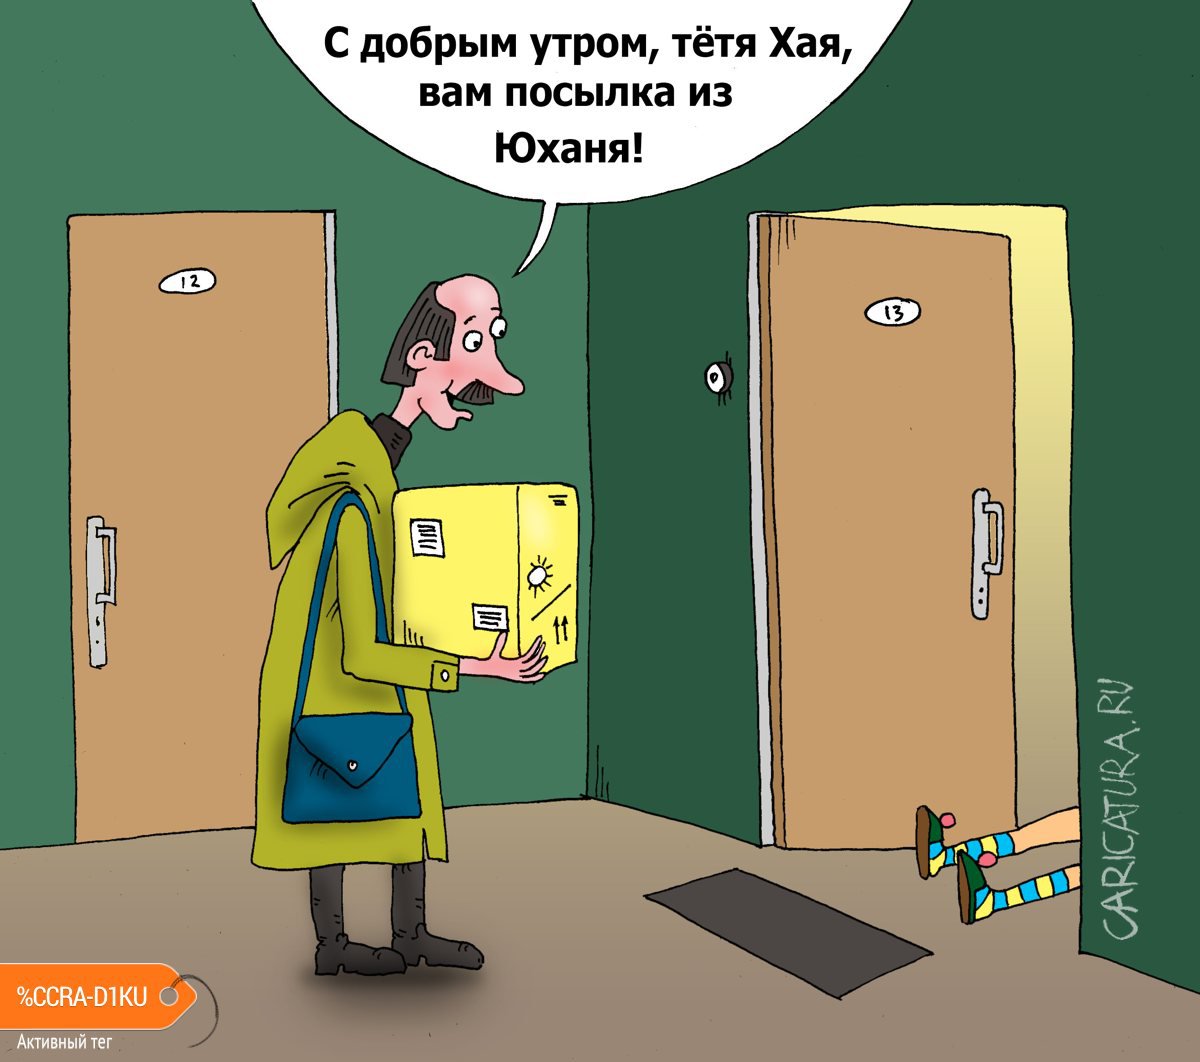 Карикатура "Старая песня о новом", Валерий Тарасенко